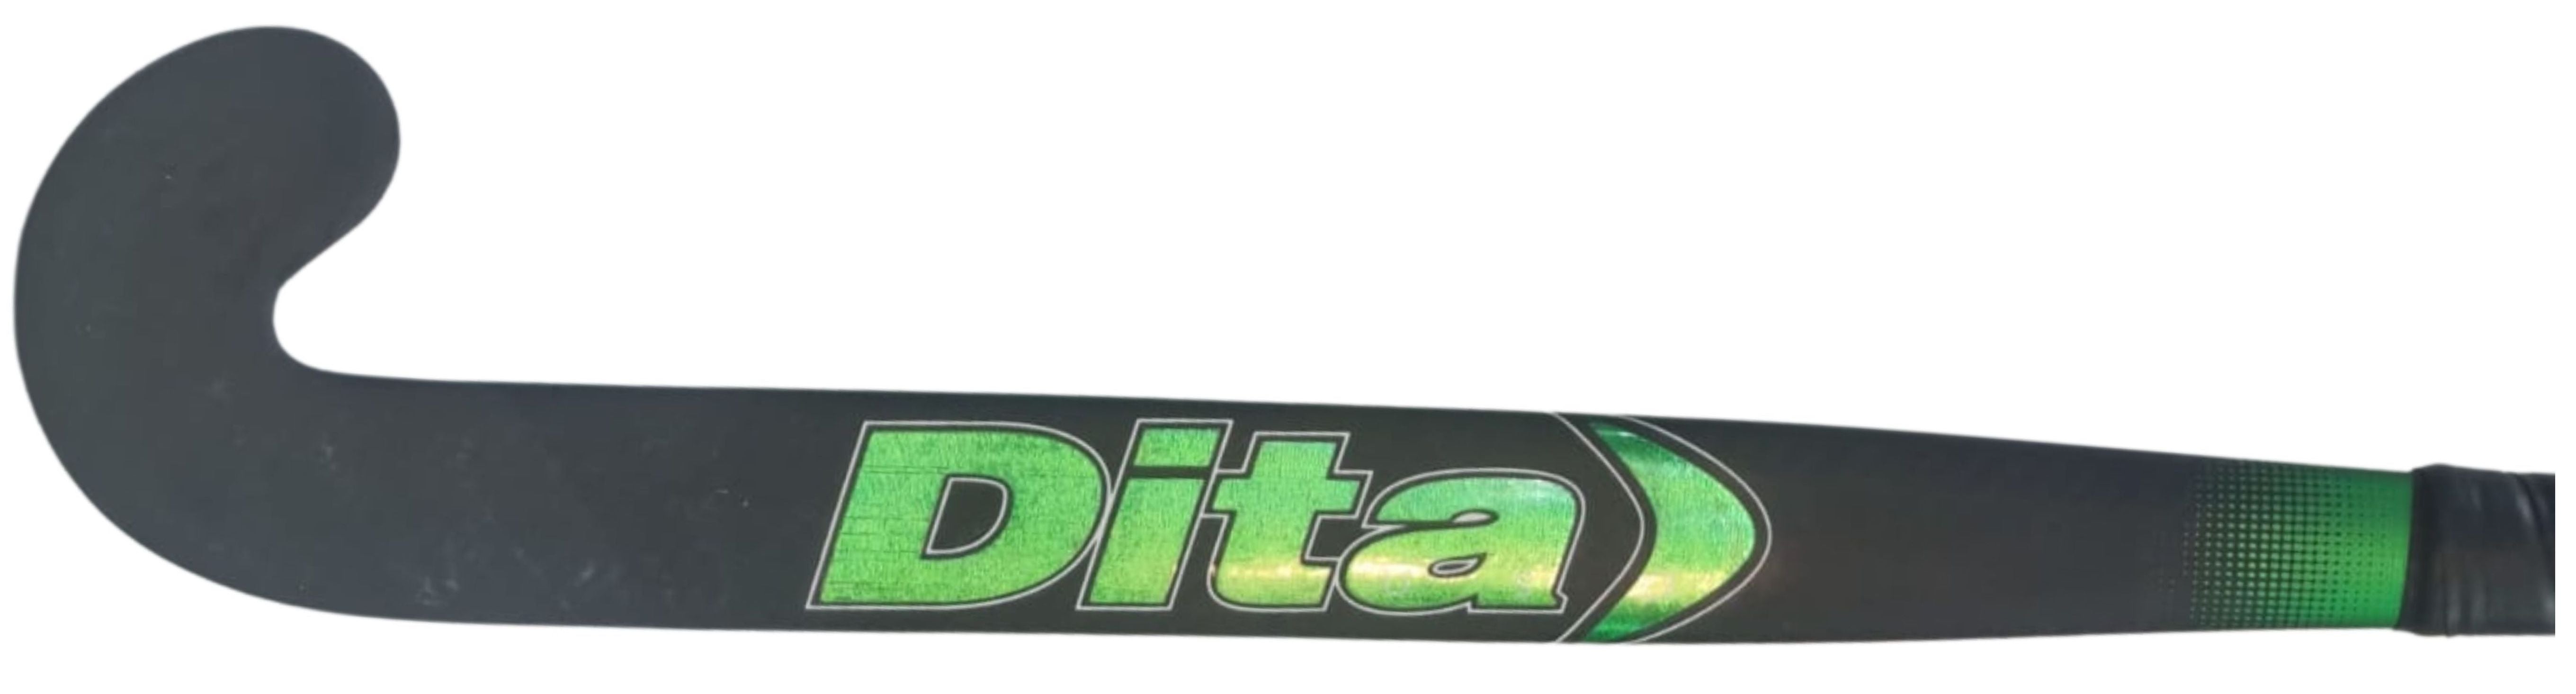 Dita USA C70 Green - For 3D Skills, Drag Flicks